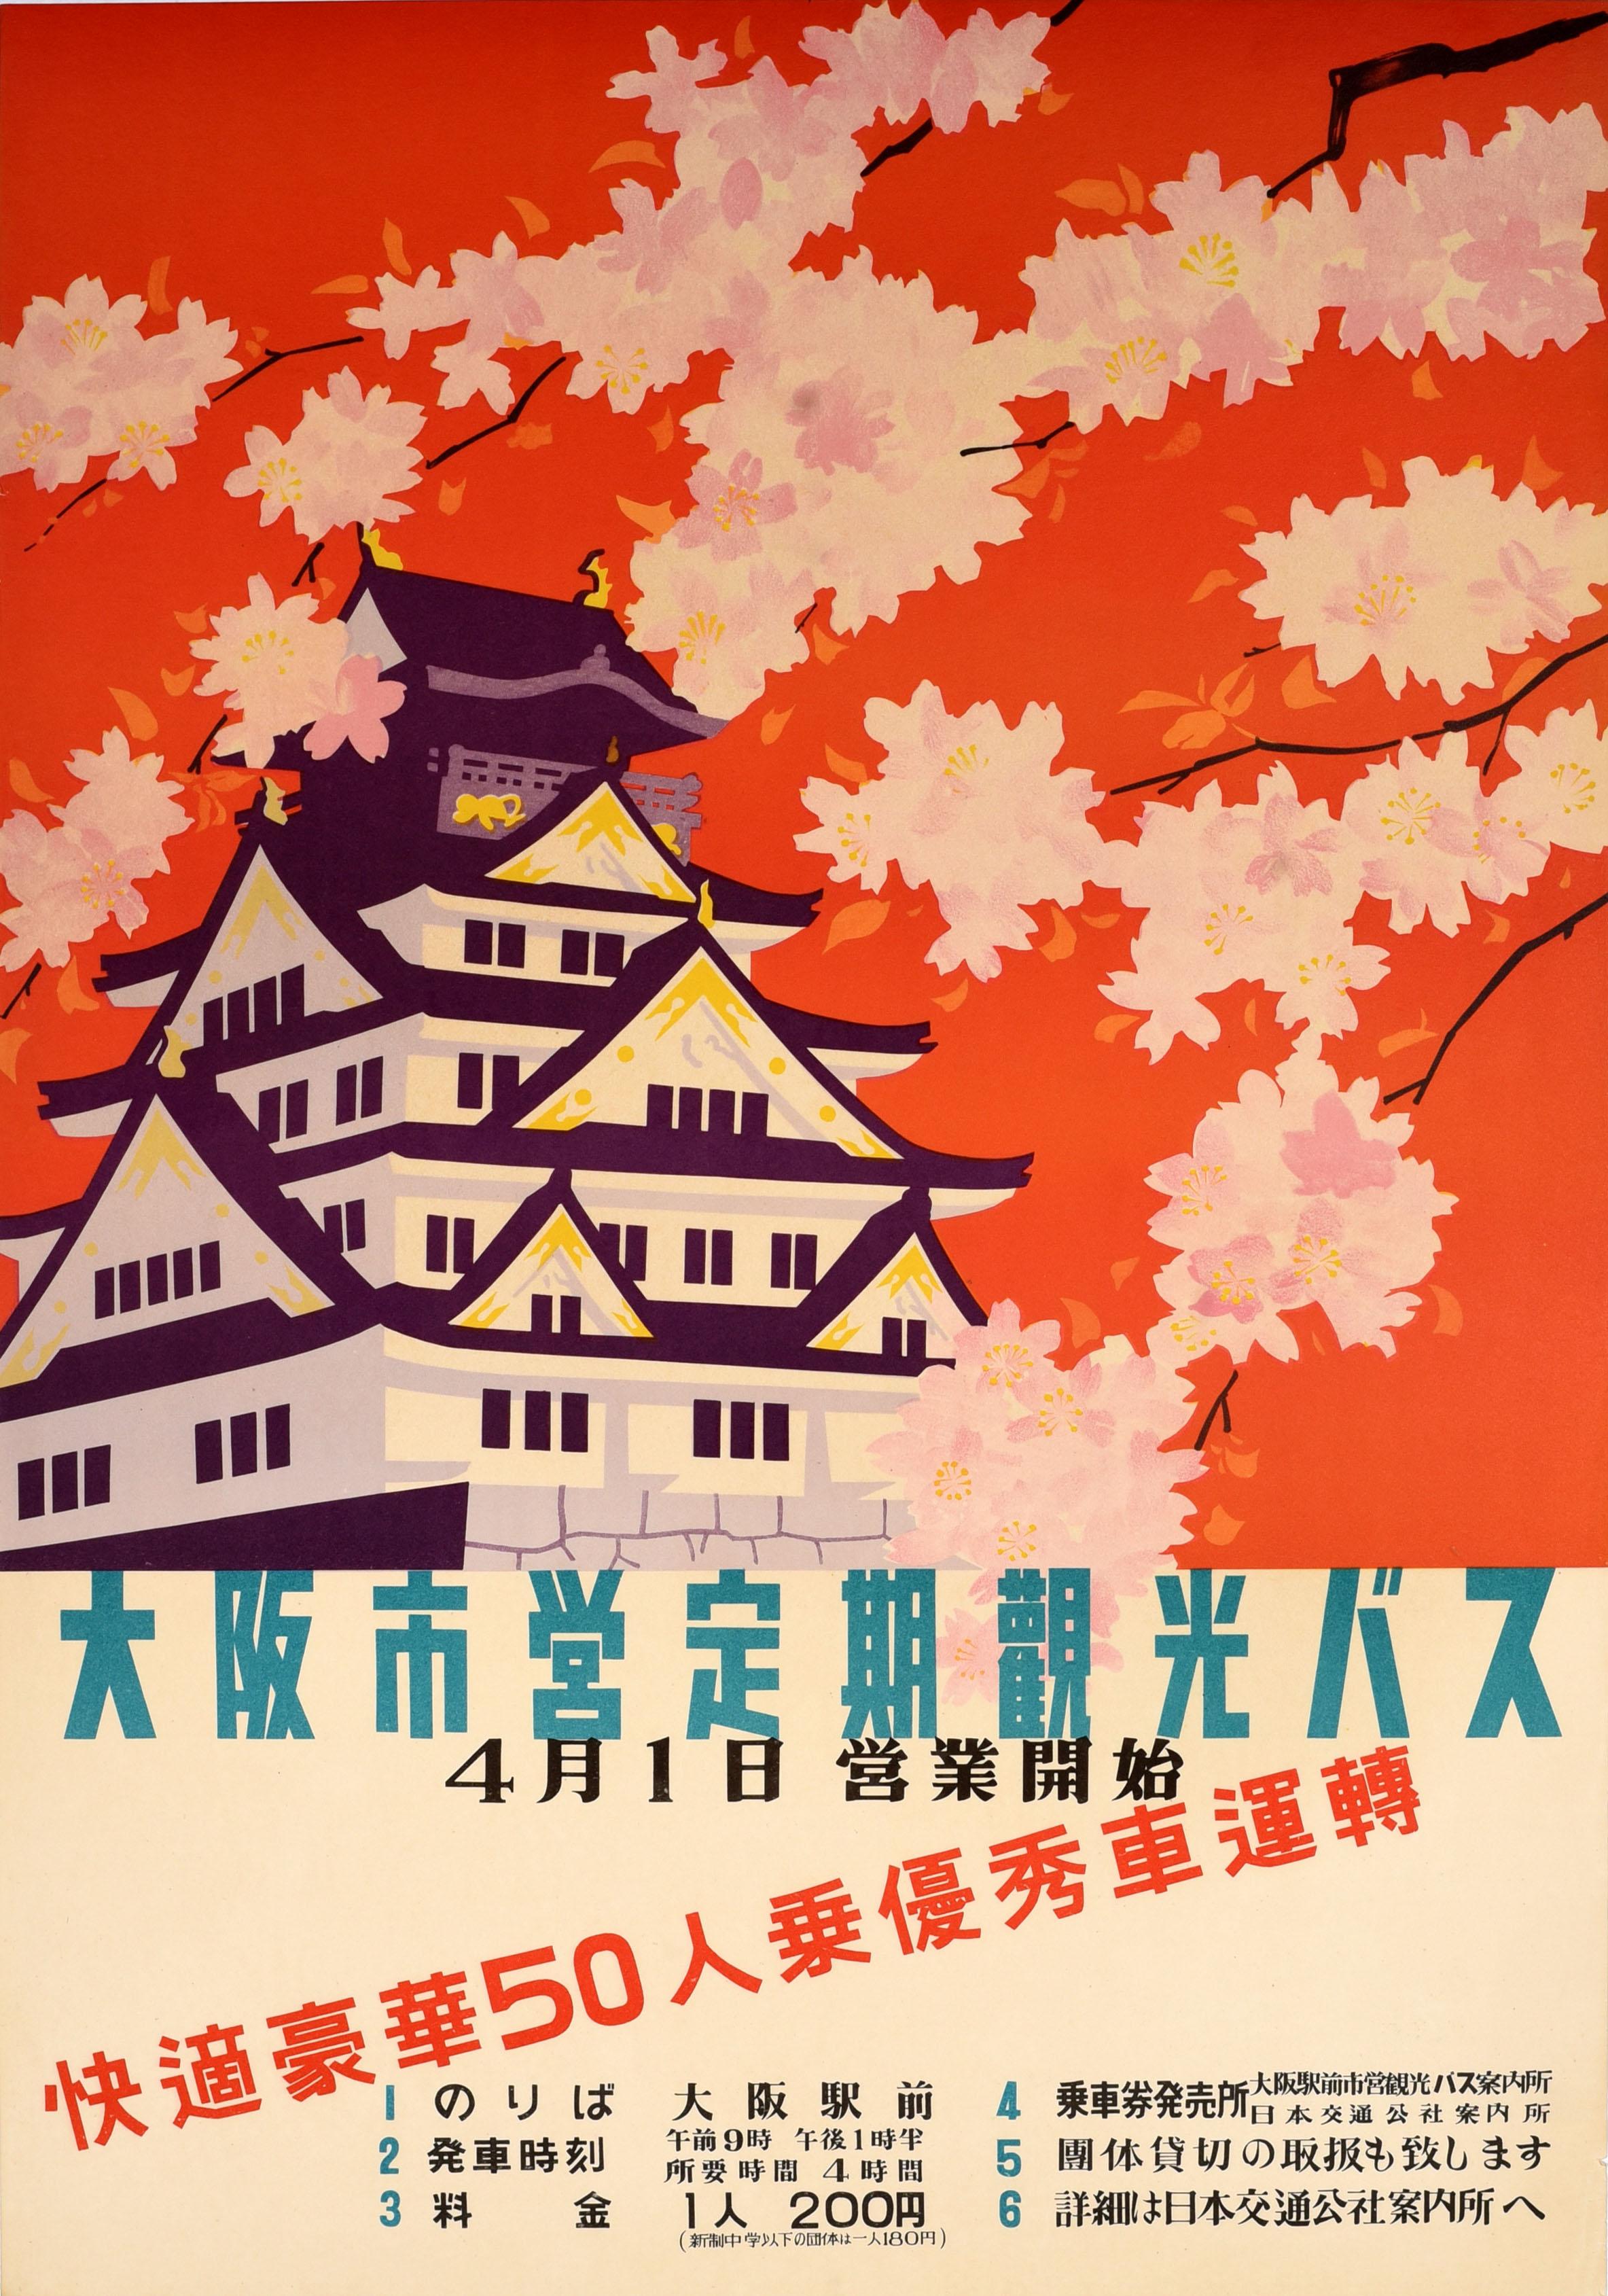 Unknown Print - Original Vintage Asia Travel Poster Osaka Castle Japan Bus Tours Sakura Cherry